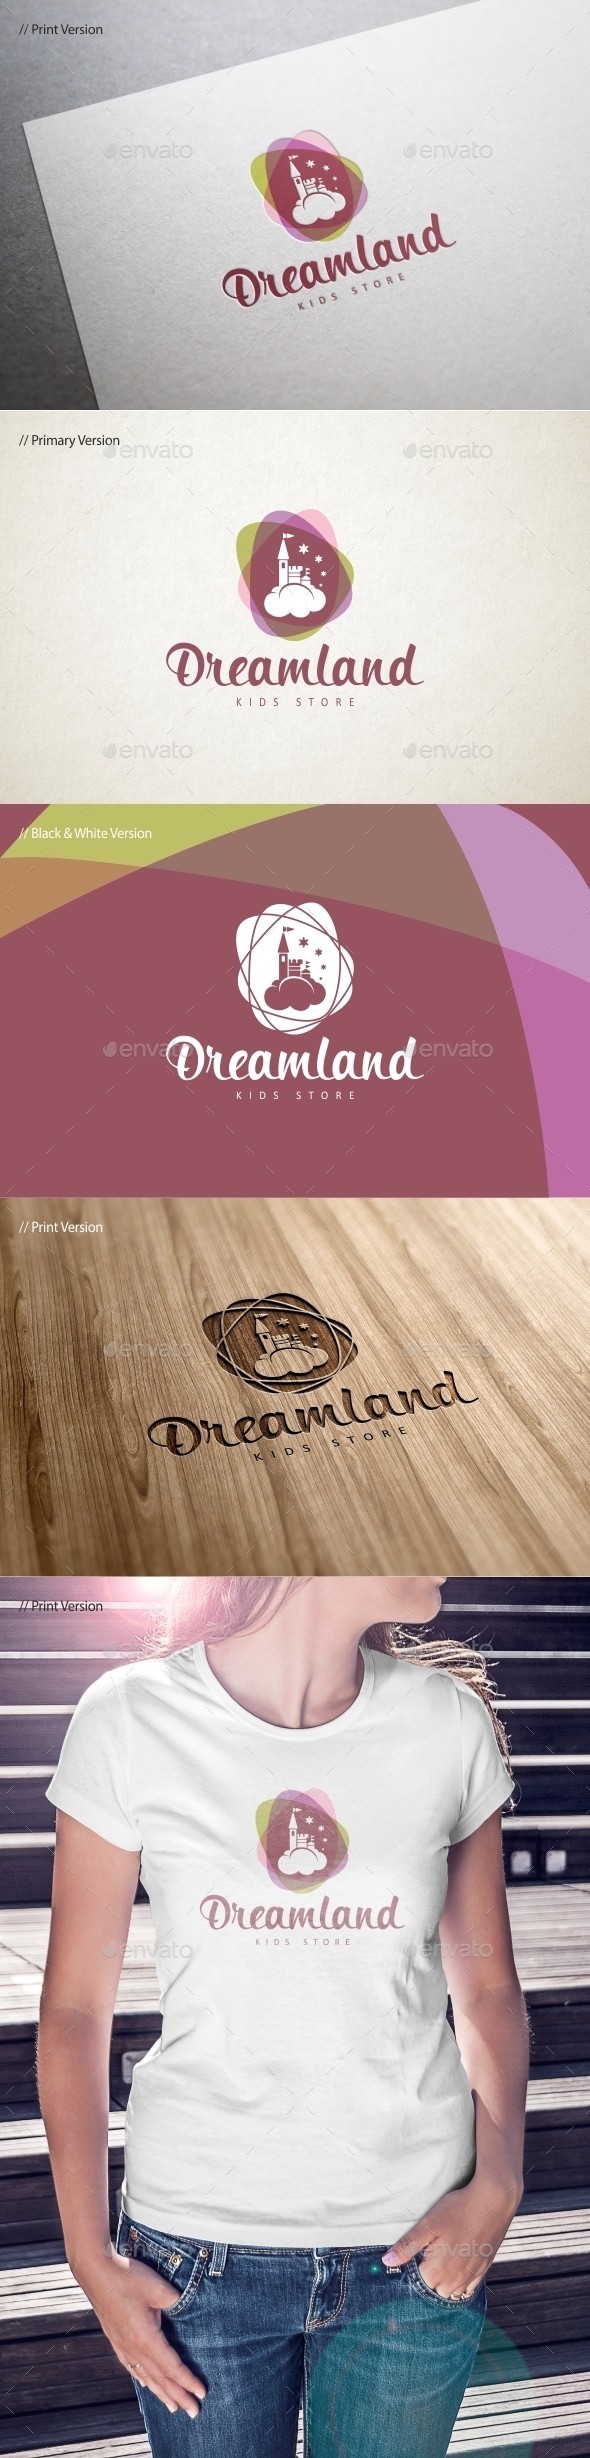 Dreamland 20logo 20template 20590